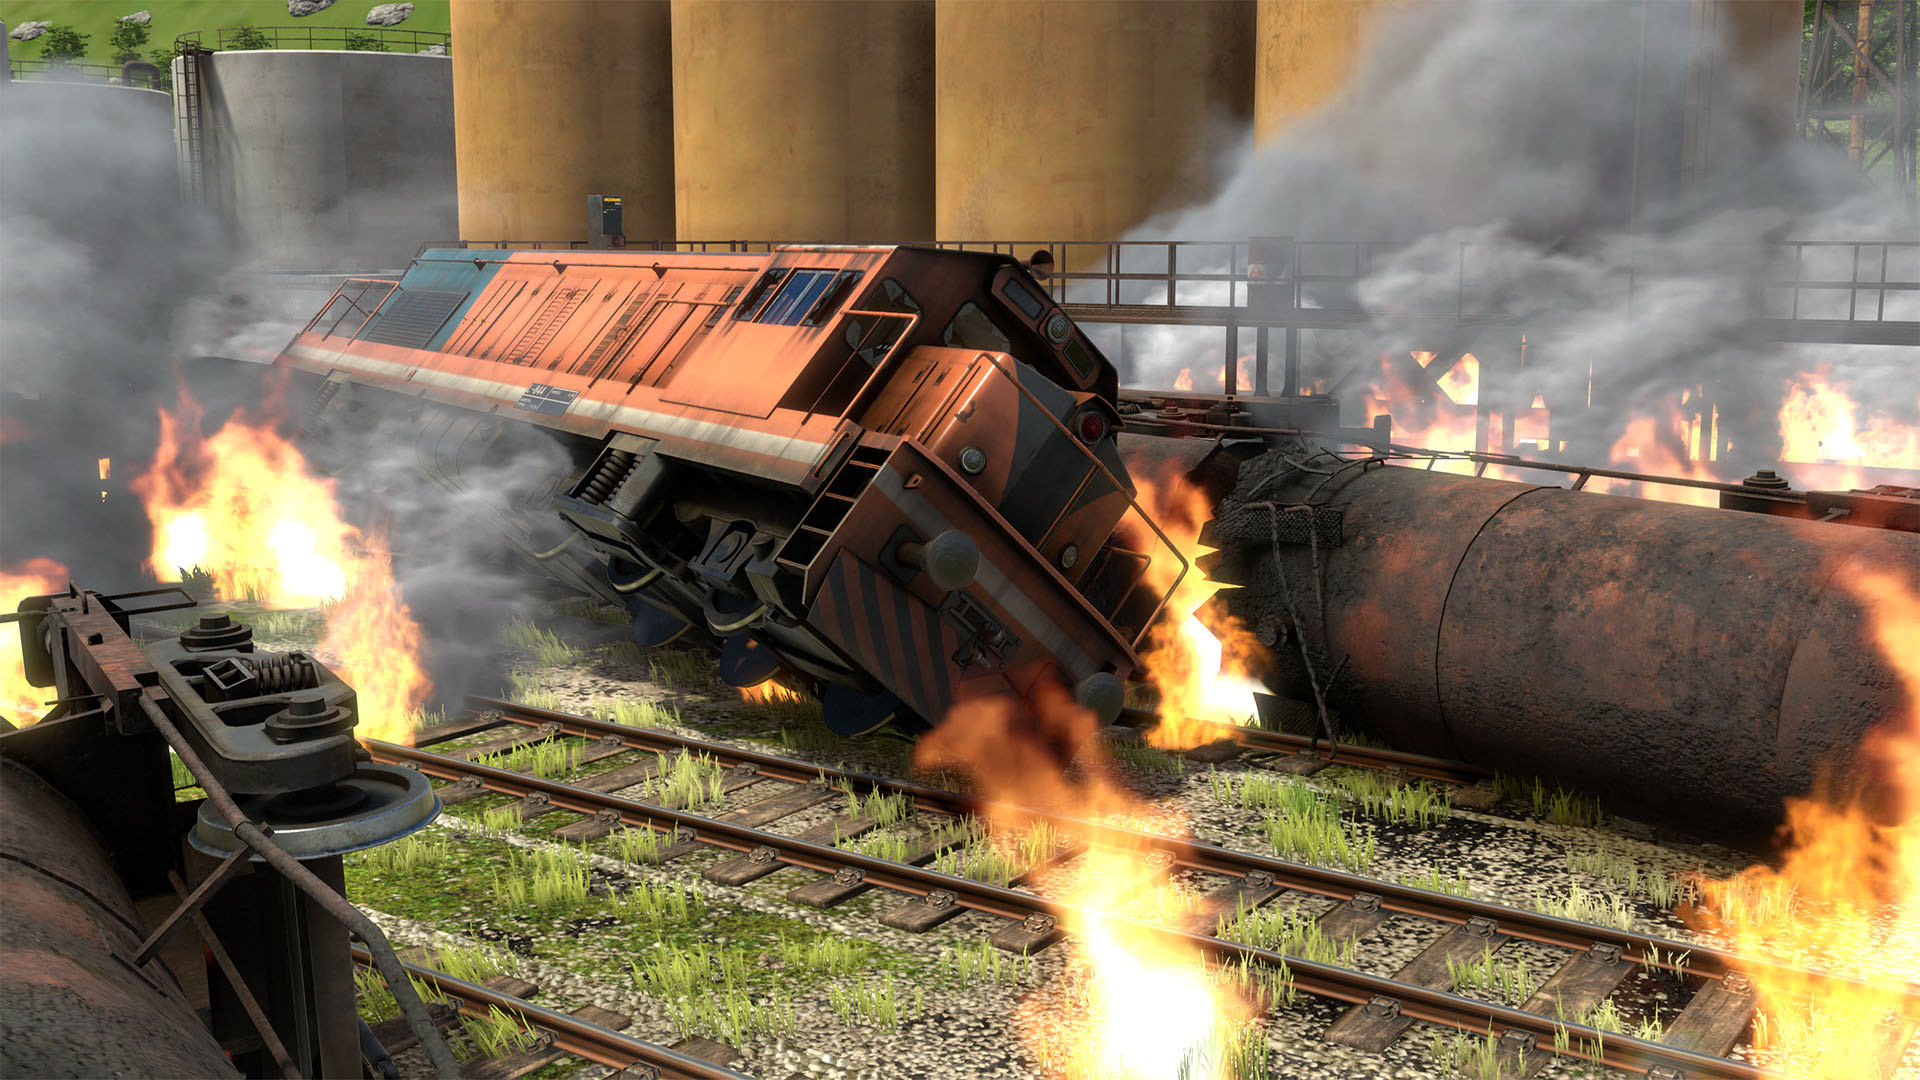 derailvalley-locomotive-diesel-accident-fire-explosion-derailed-4k.jpg